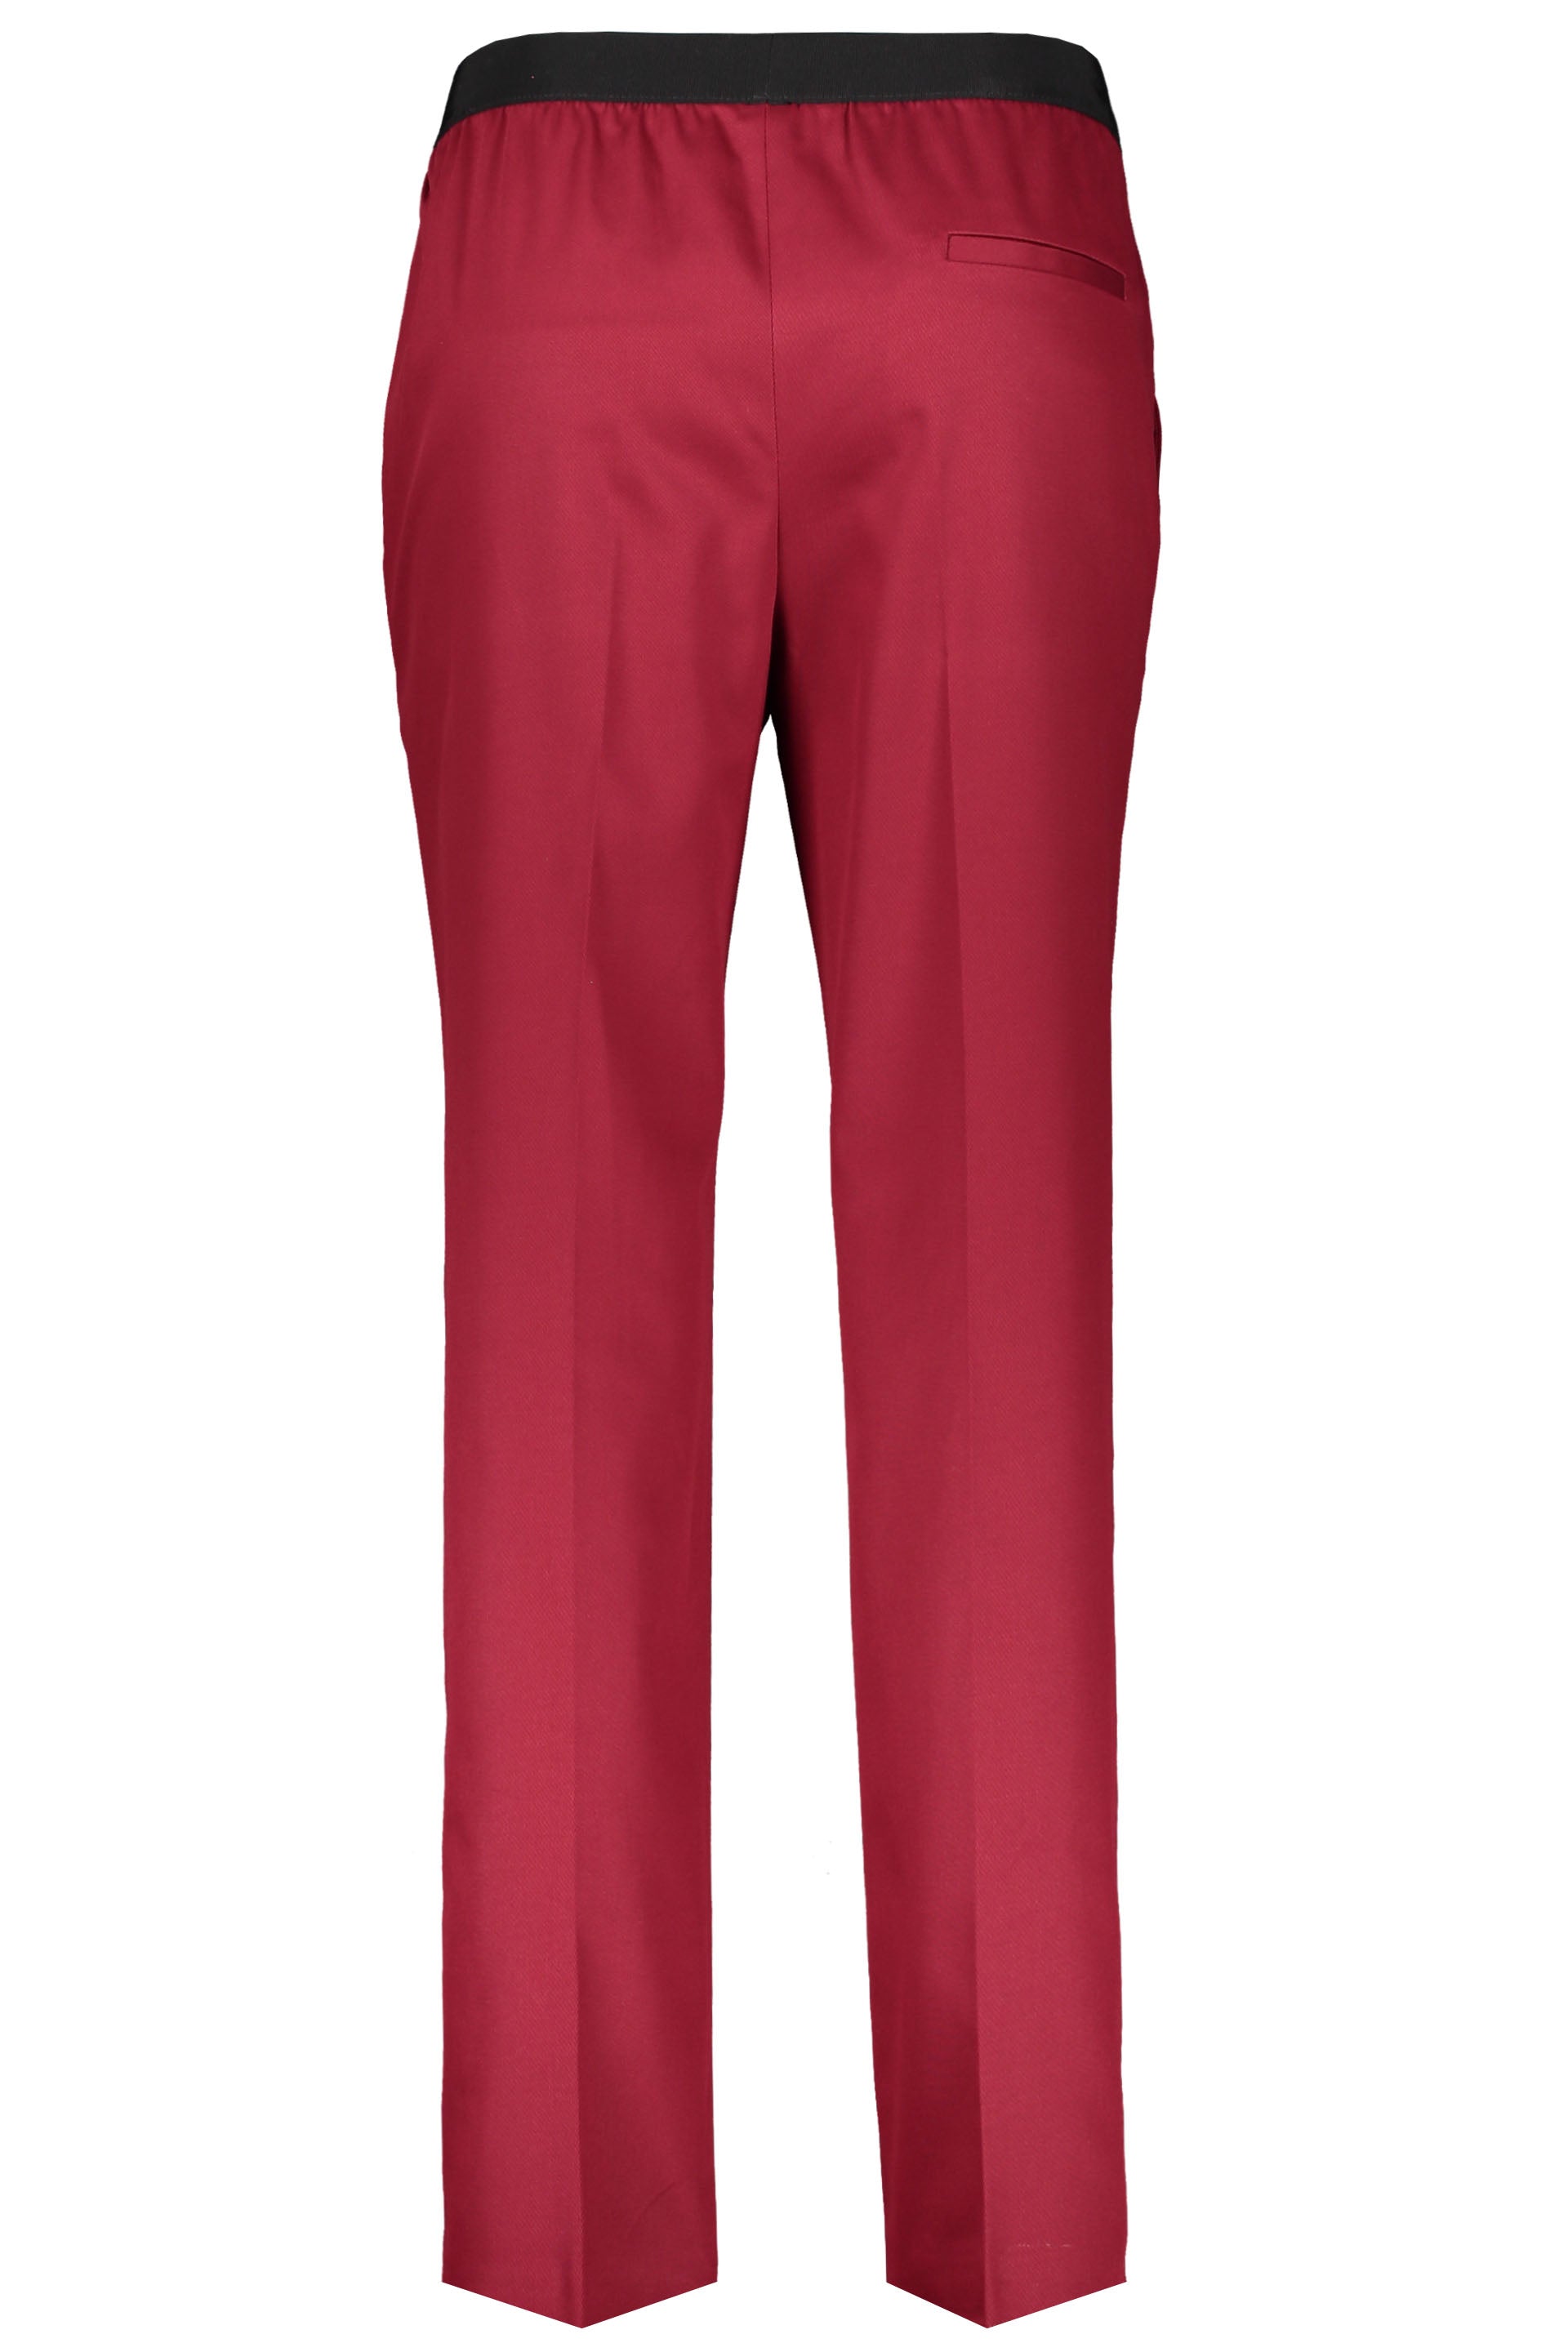 Agnona-OUTLET-SALE-Cotton-trousers-Hosen-ARCHIVE-COLLECTION-2_70cd74d7-1c32-4997-85fe-194ff1bf1319.jpg